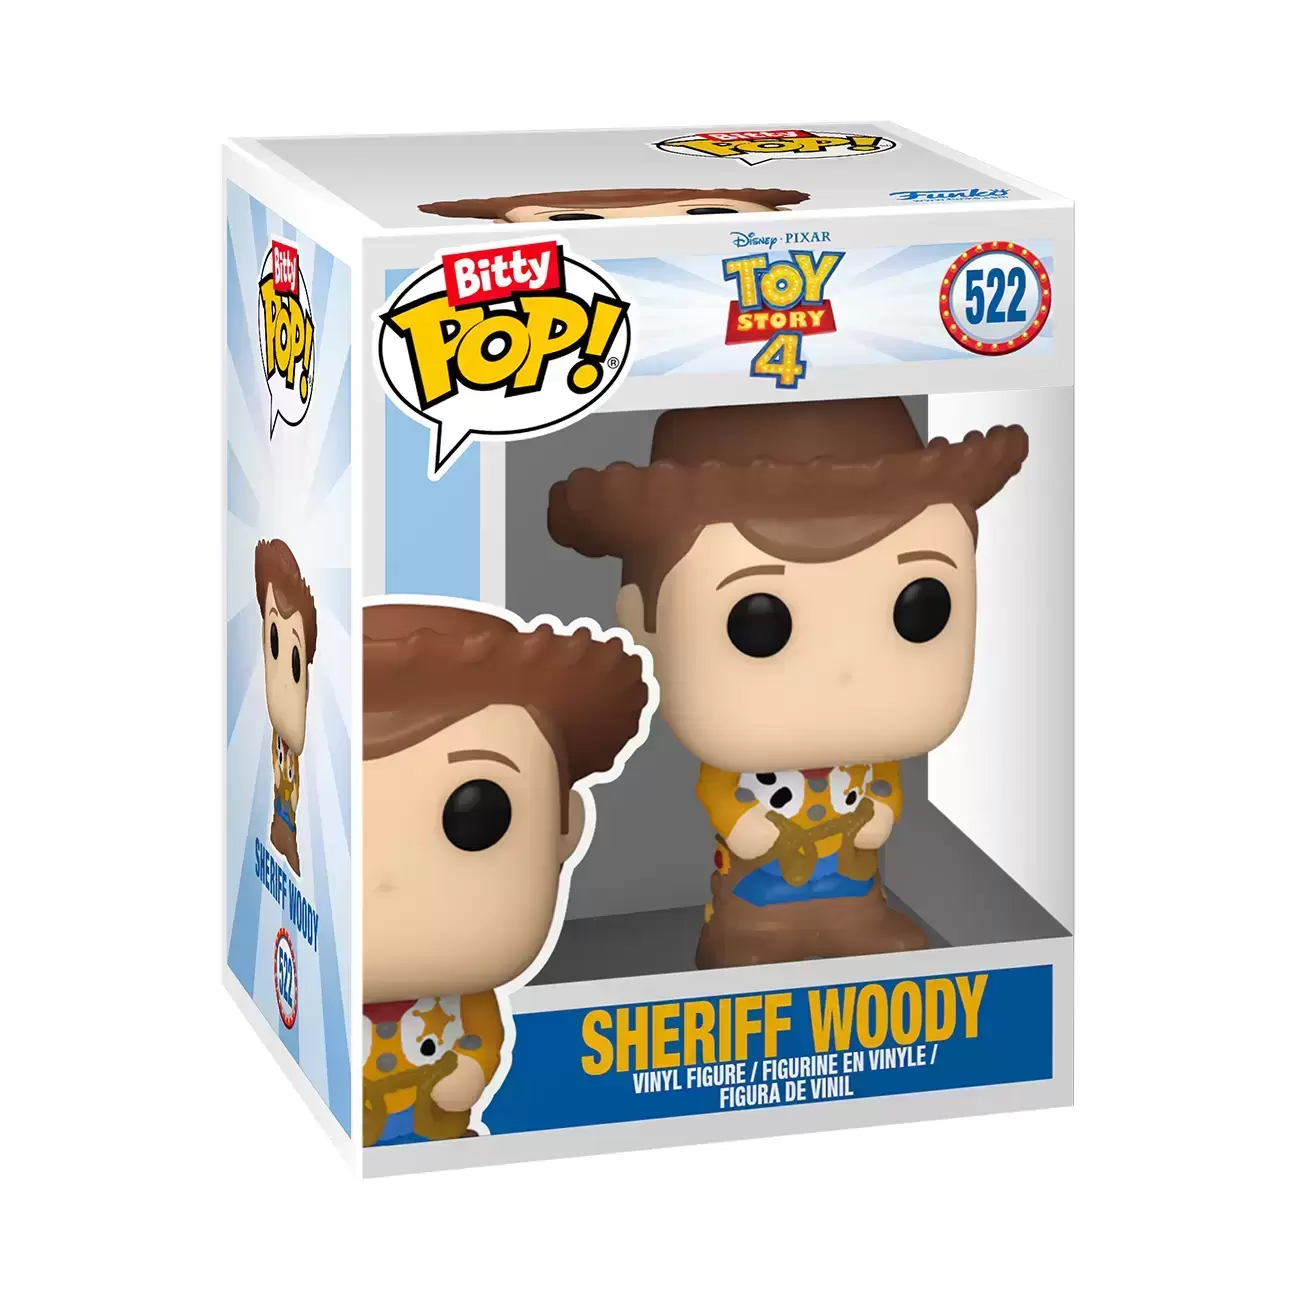 Bitty POP! - Toy Story - Sheriff Woody